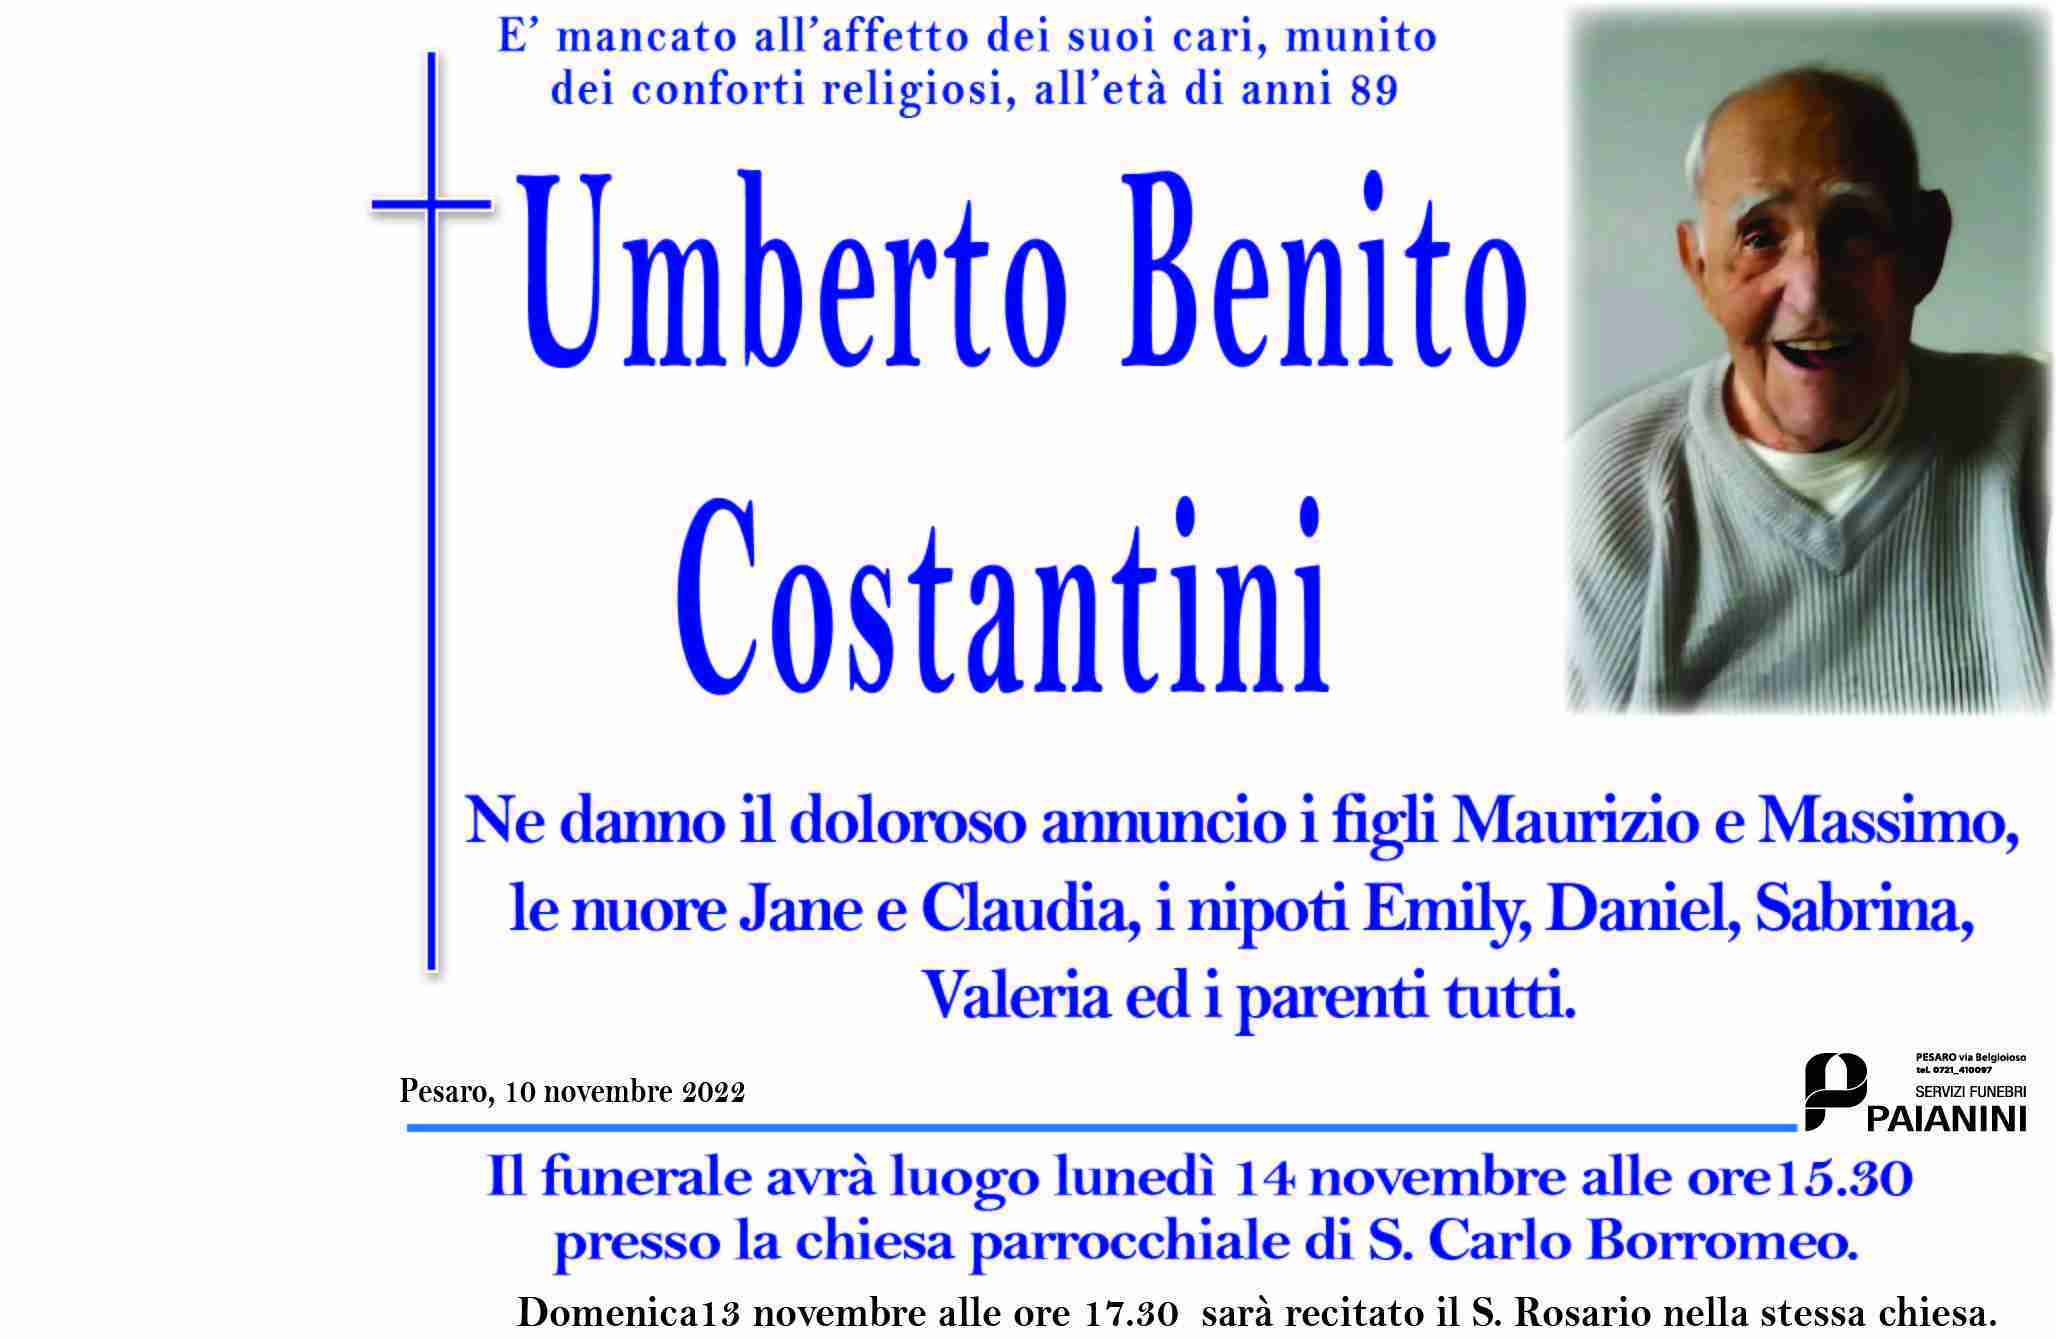 Umberto Benito Costantini